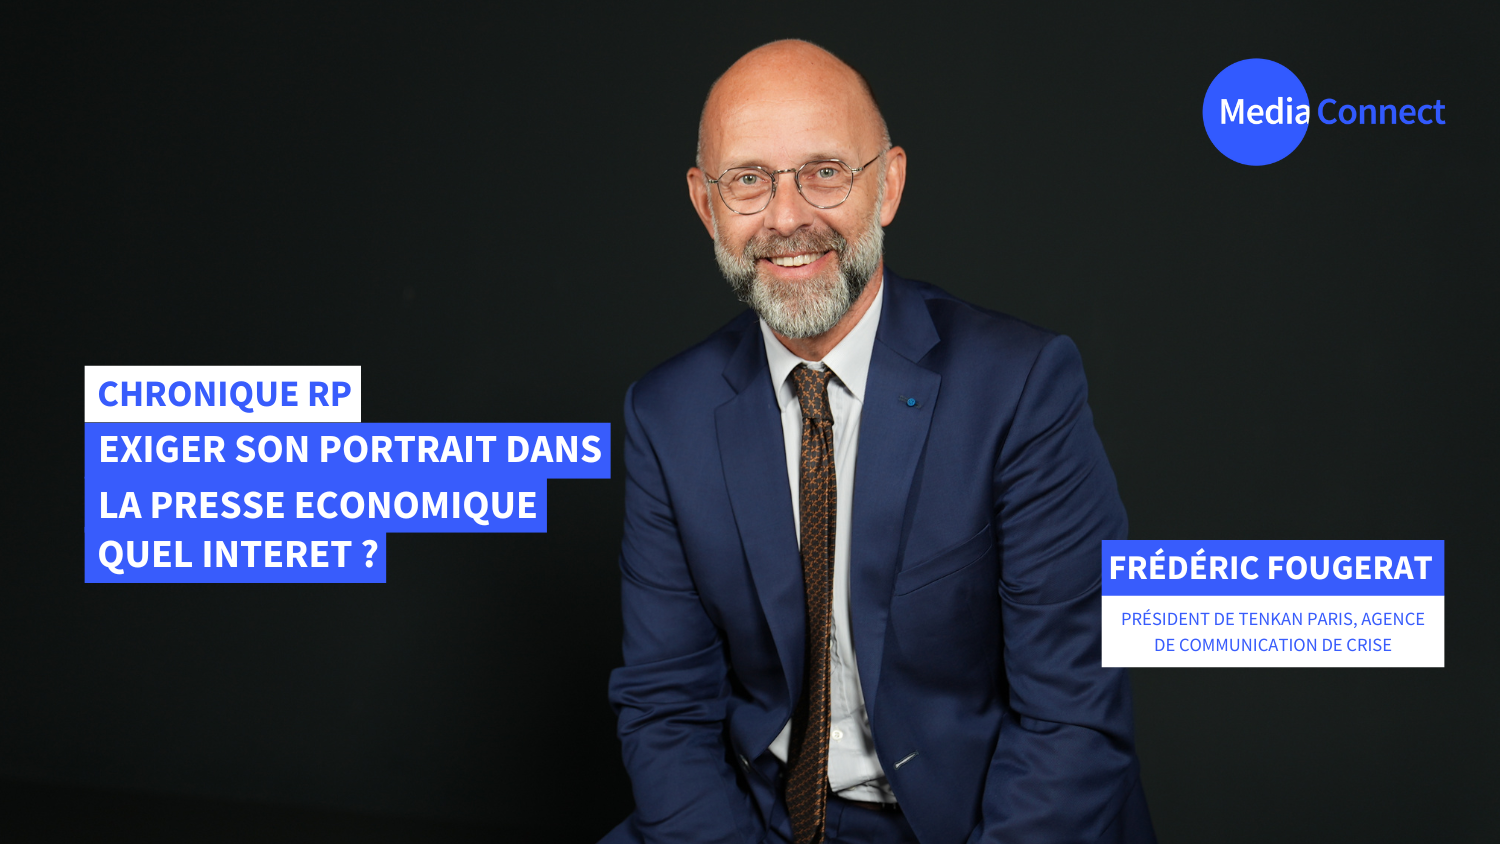 Chronique RP - Frédéric Fougerat X MediaConnect : Exiger son portrait dans la presse économique. Quel intérêt ? [Vidéo]